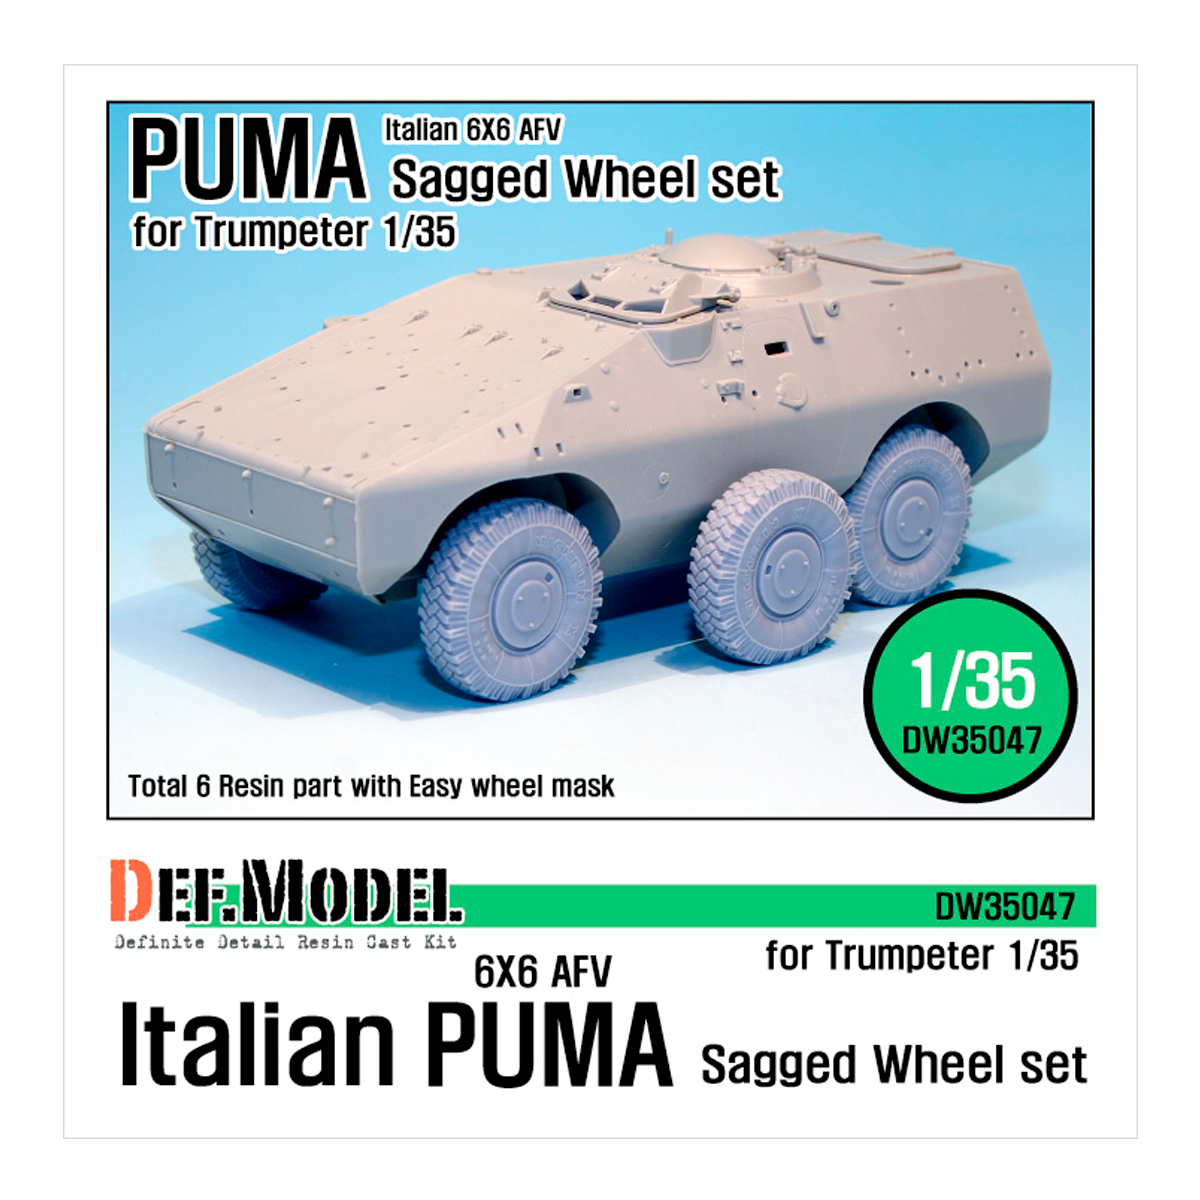 Italian PUMA 6X6 AFV Sagged Wheel set (for Trumpeter 1/35)